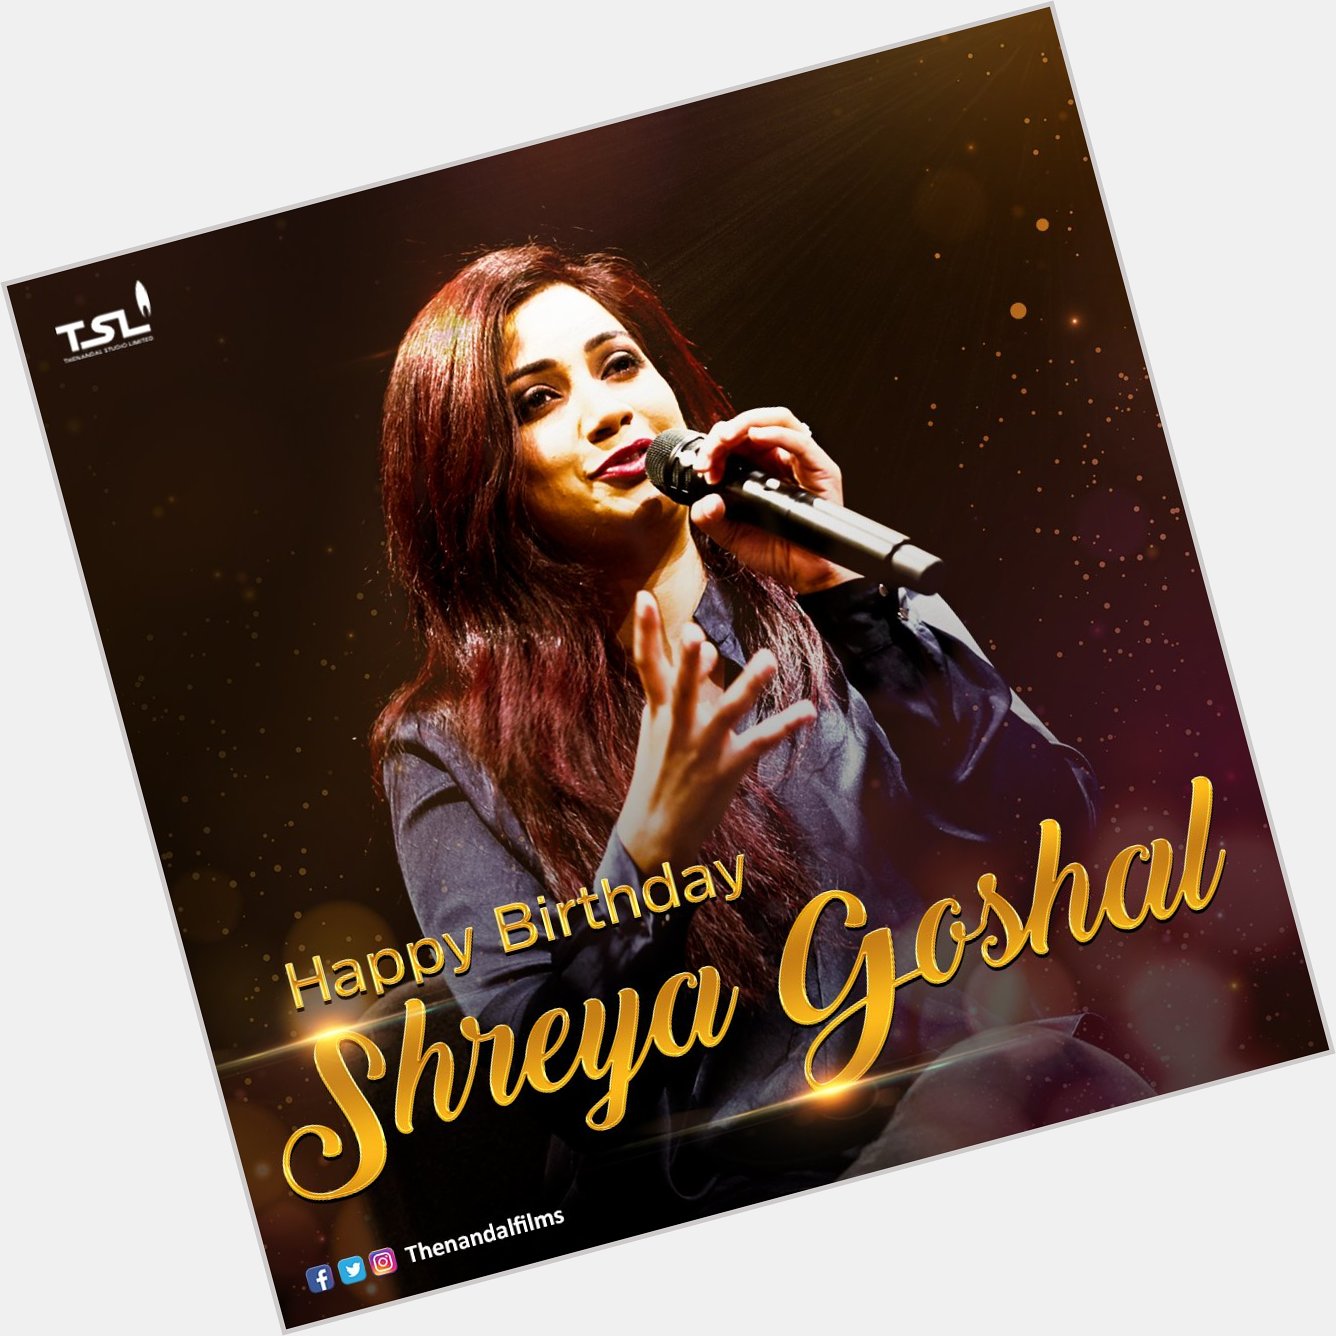 Happy birthday day Dear Shreya Ghoshal, God bless  